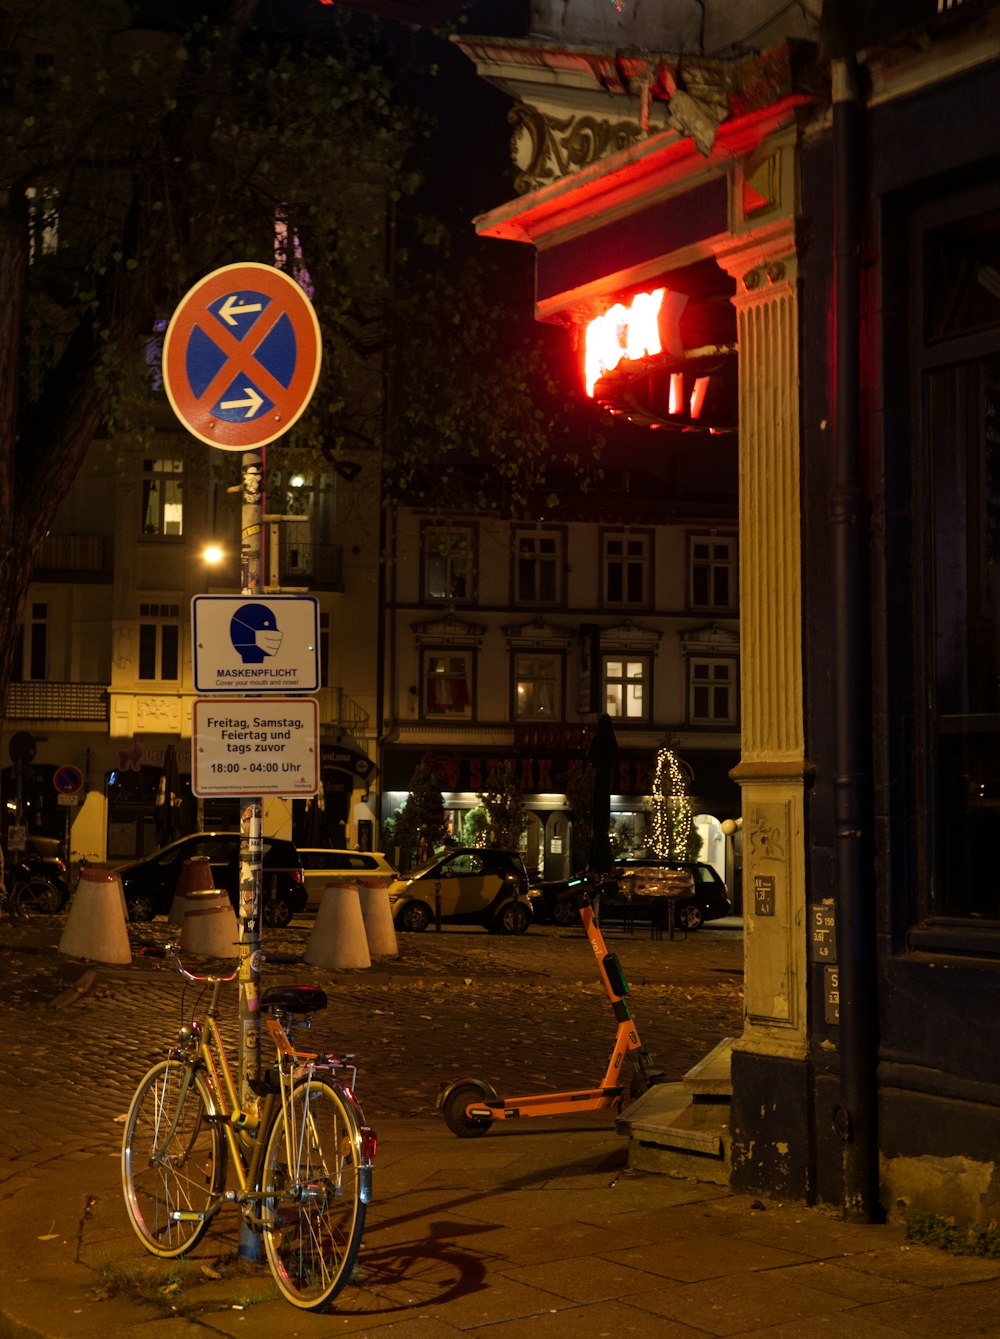 Bicicletta parcheggiata accanto alla parte anteriore del negozio durante la notte